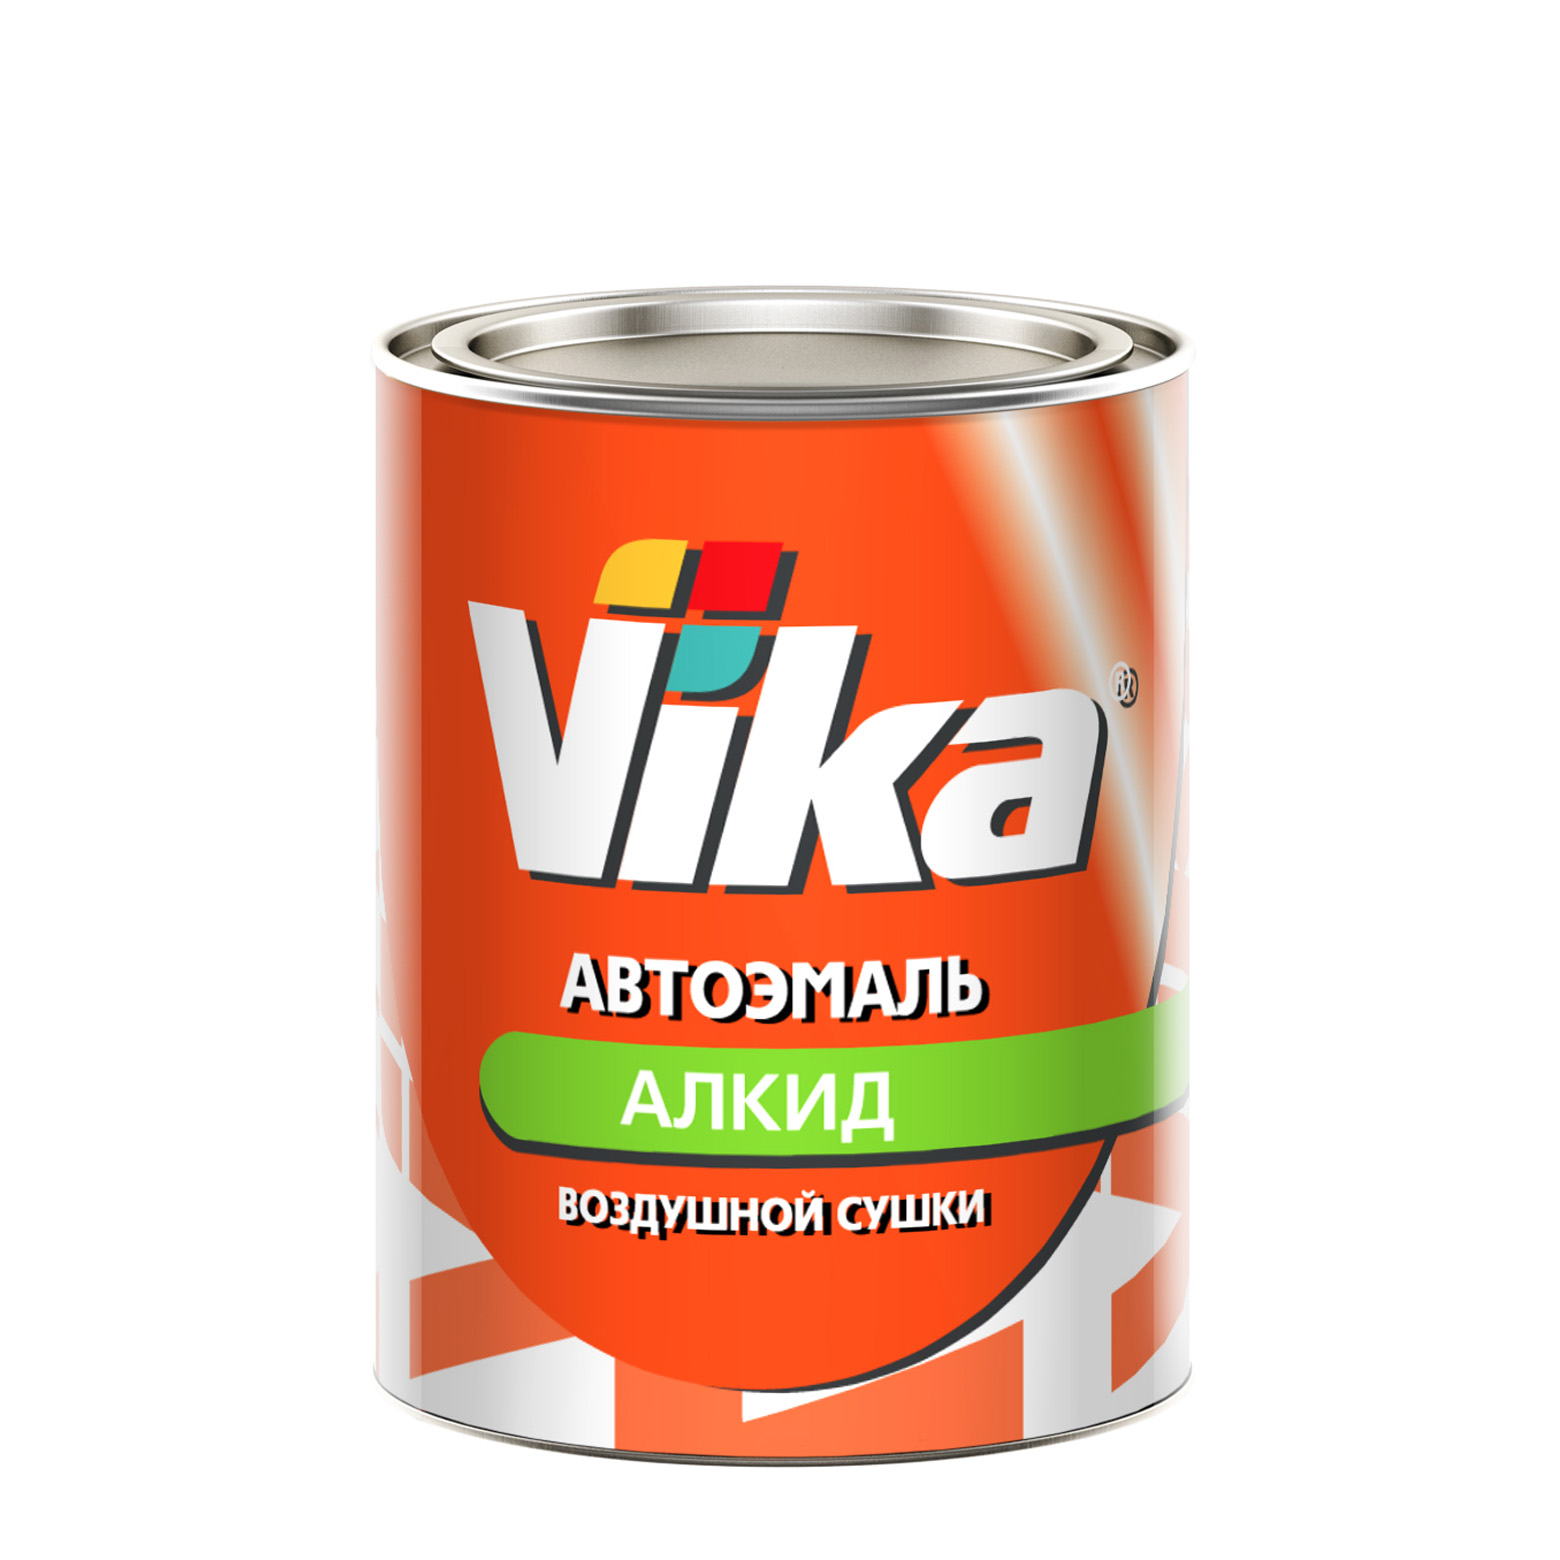 Фото 1 - Автоэмаль Vika-60, цвет Белая Ночь алкидная глянцевая естественной сушки - 0,8 кг.